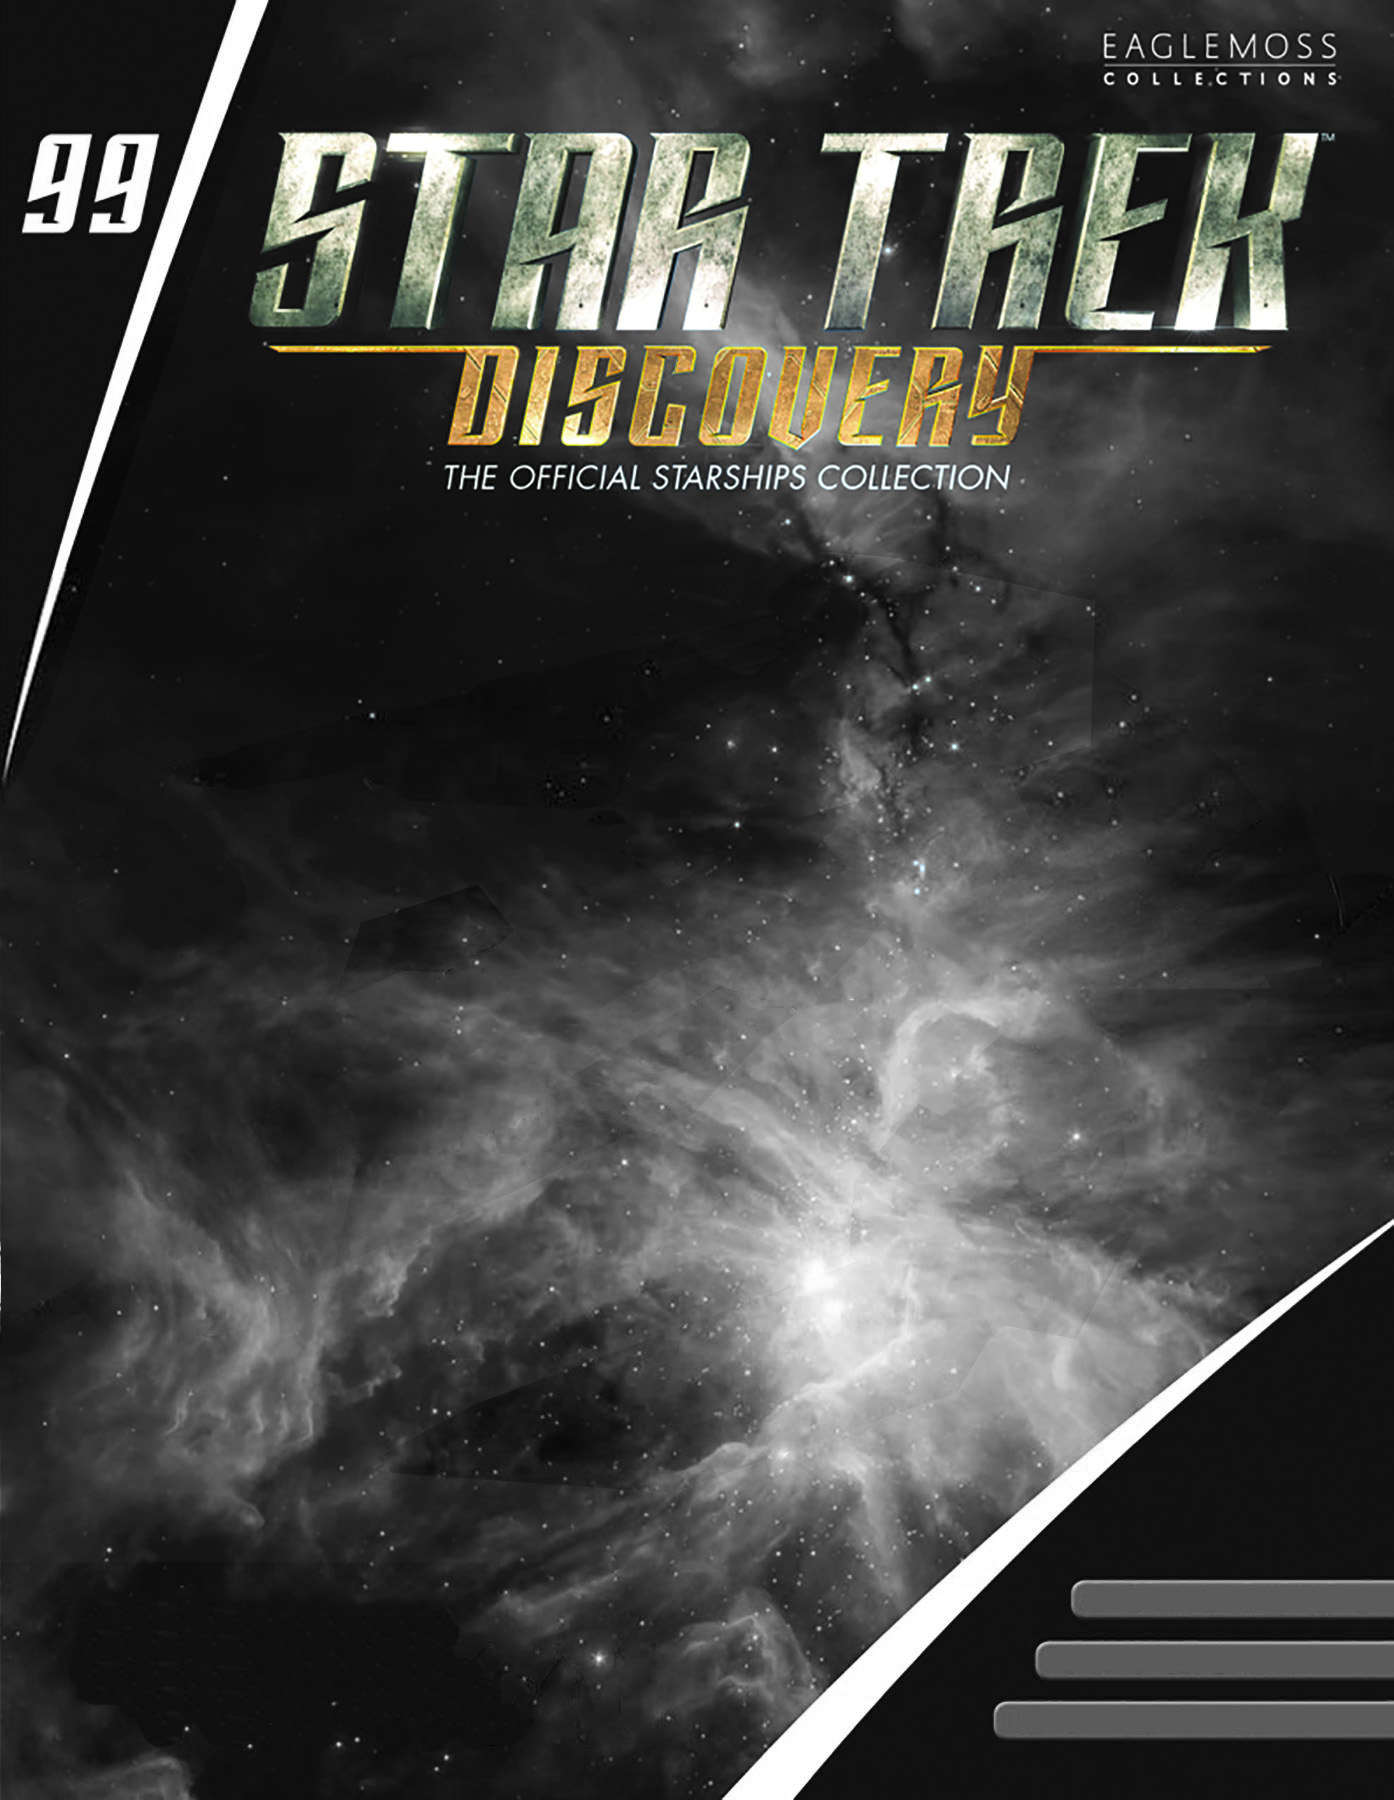 Eaglemoss Star Trek Starships Discovery Blank